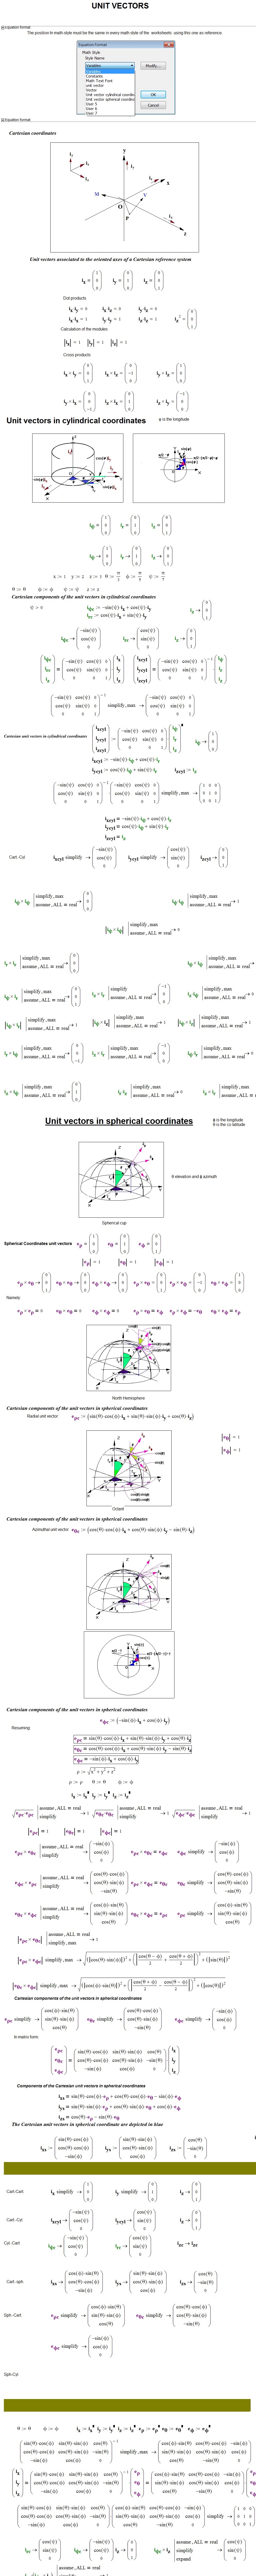 Unit Vectors &amp; Vector calculus.jpg